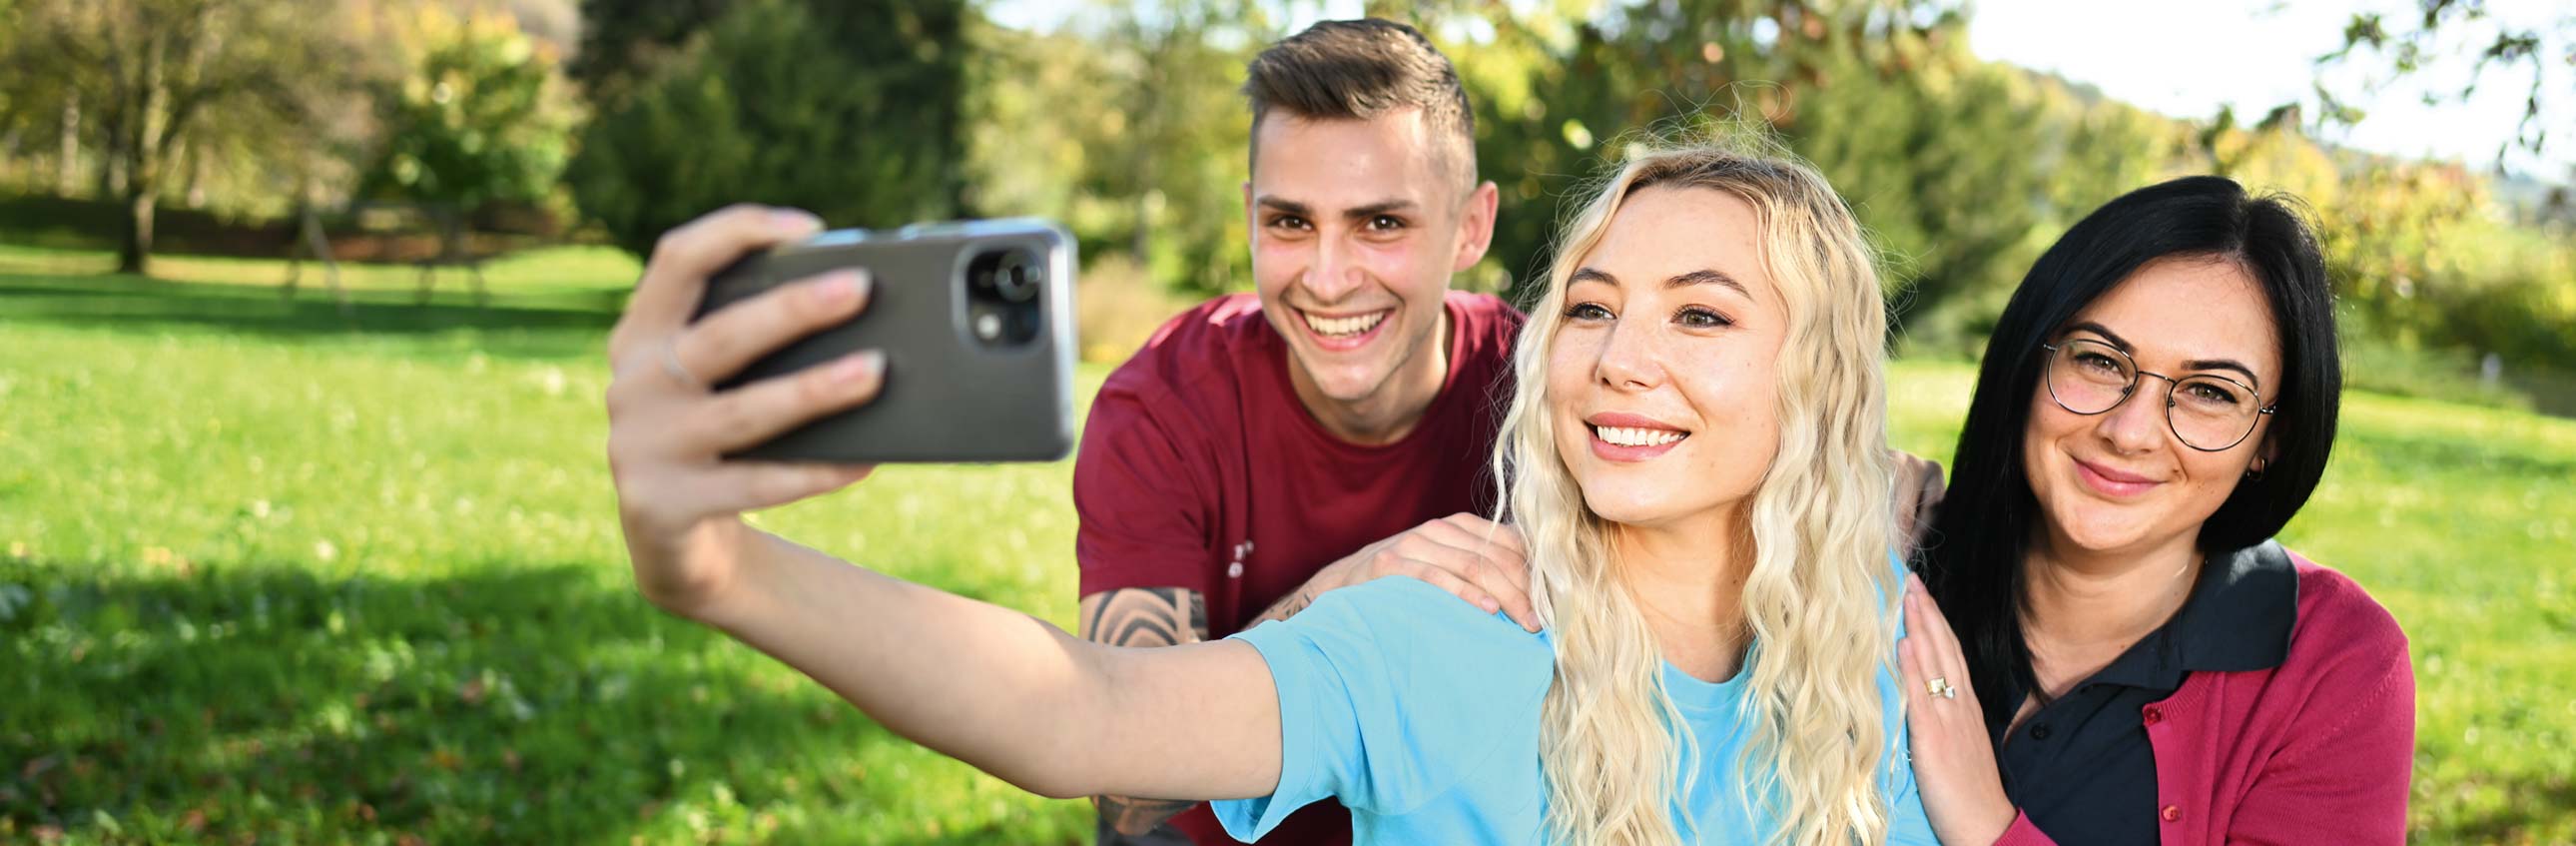 Das Bild zeigt drei junge Menschen bei der Aufnahme eines Selfies